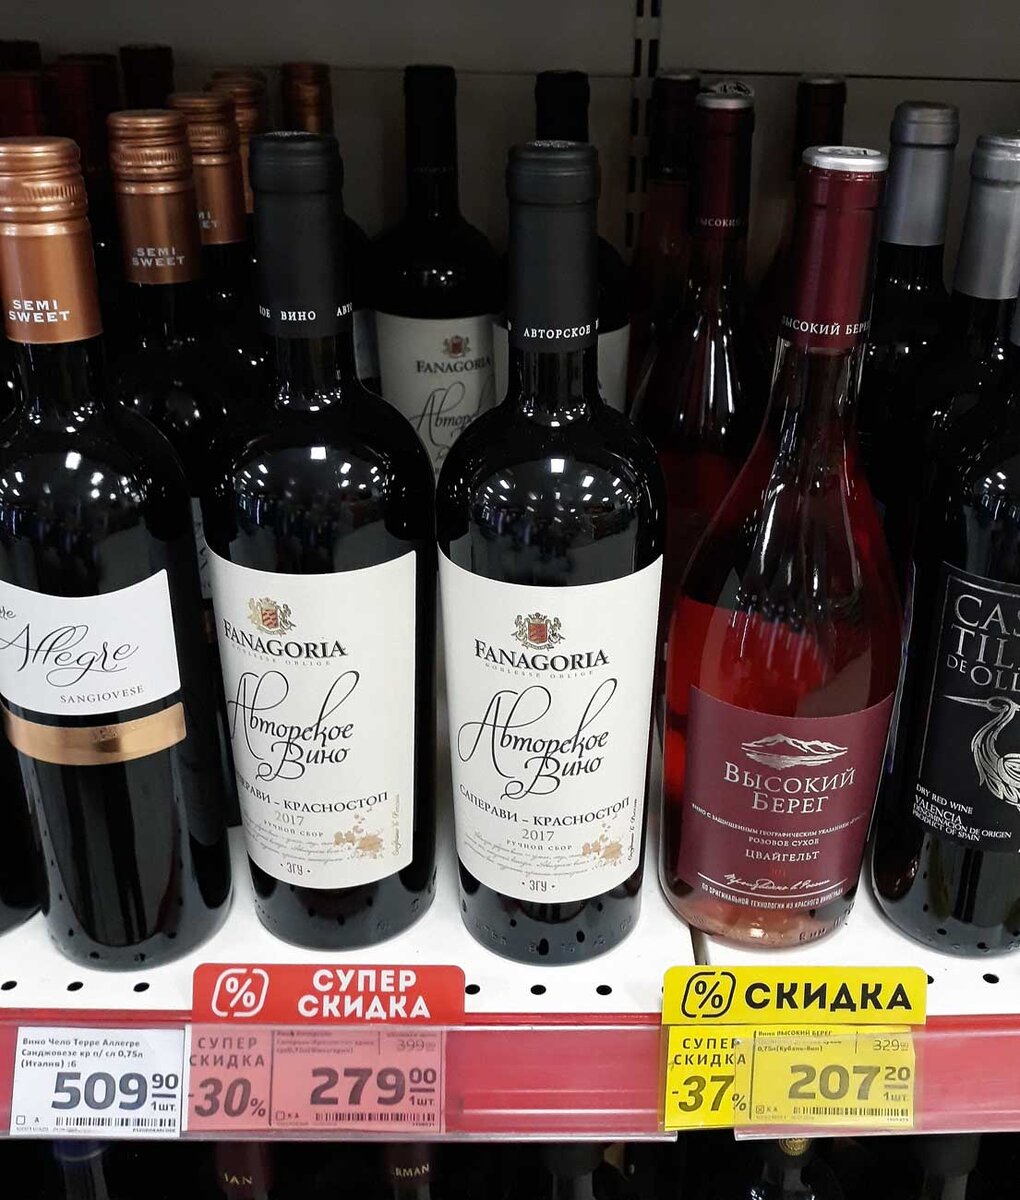 Купить вино в кб. Вкусное вино. Вино дешевое и вкусное. Вино в магните. Вкусное вино в магните.